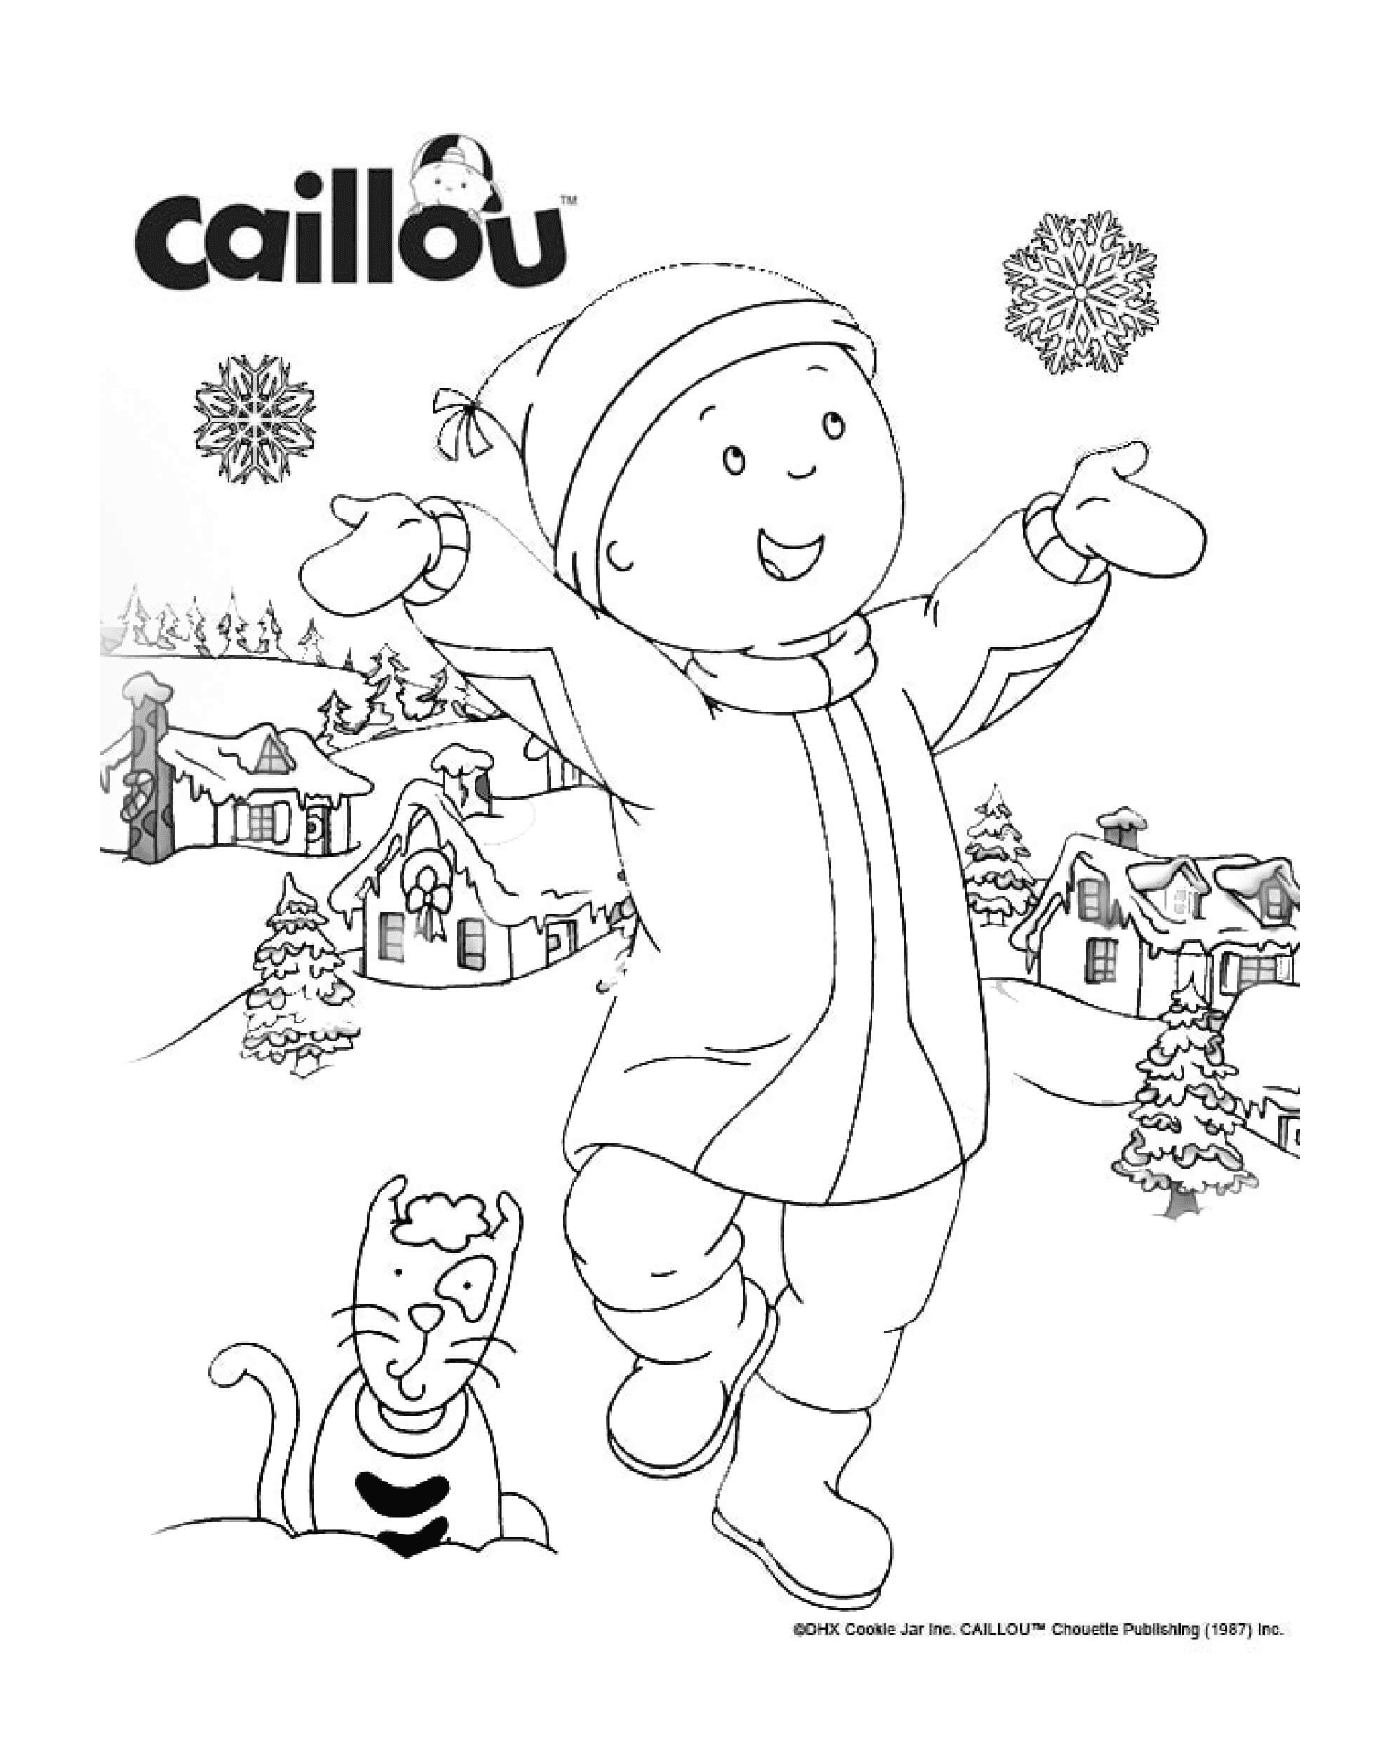   Noël approche avec Gilbert et Caillou qui adorent les flocons de neige 